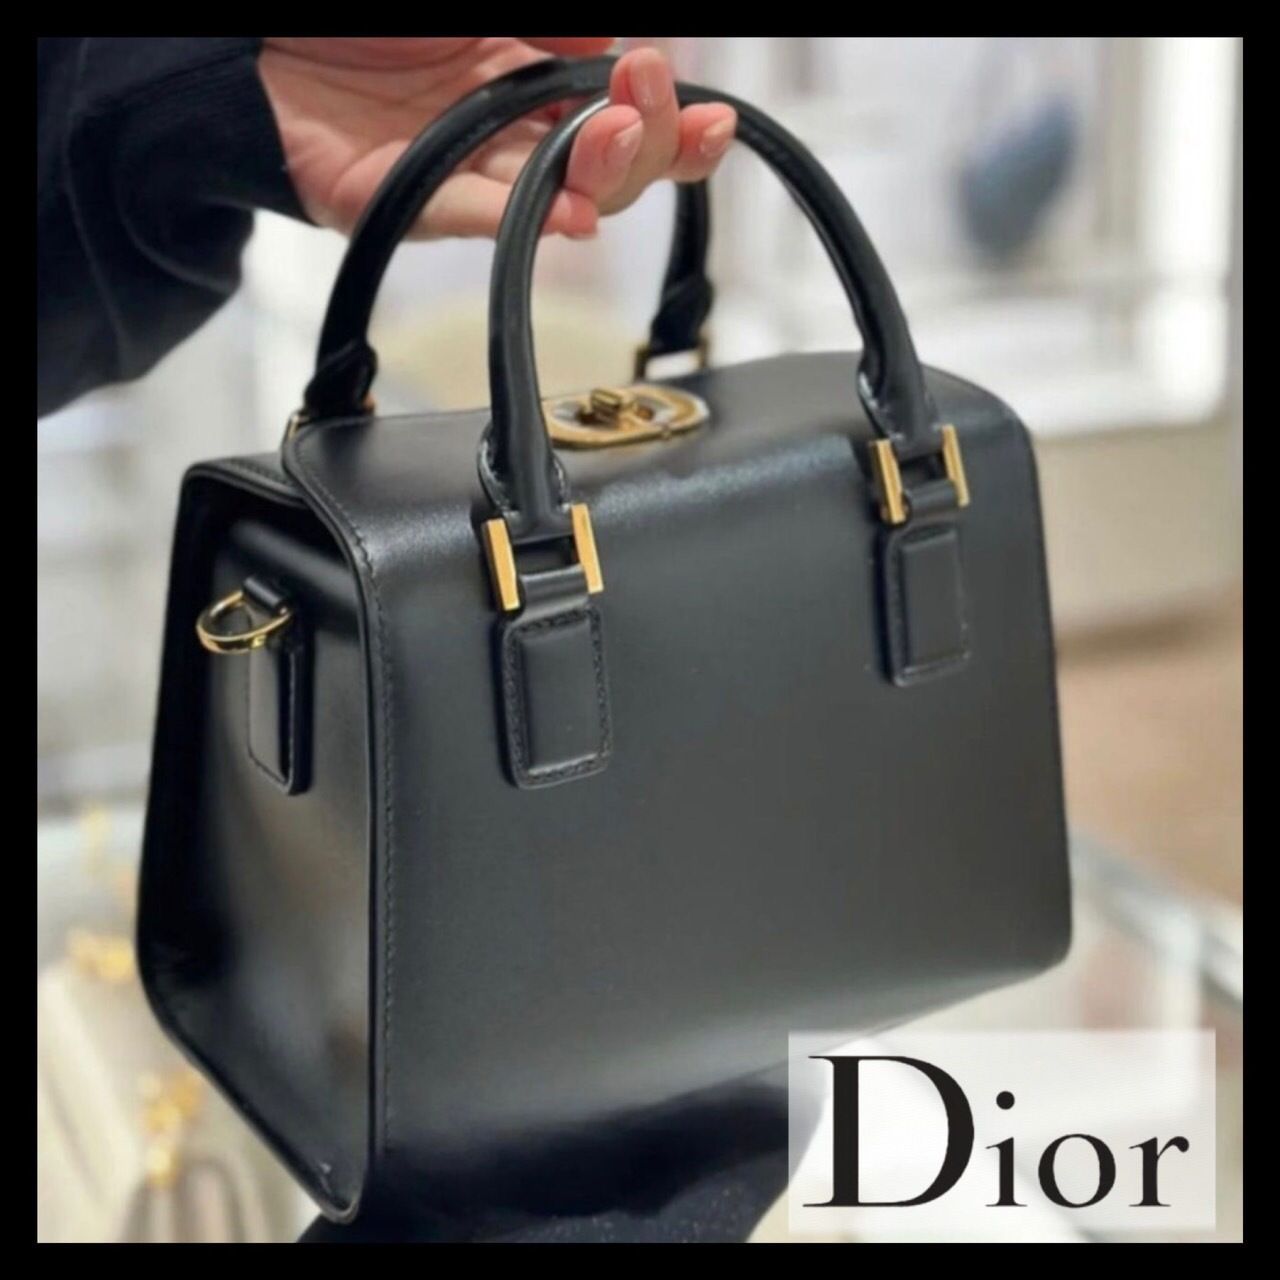 Amazing dor luxury smart bag - AmazingBaba